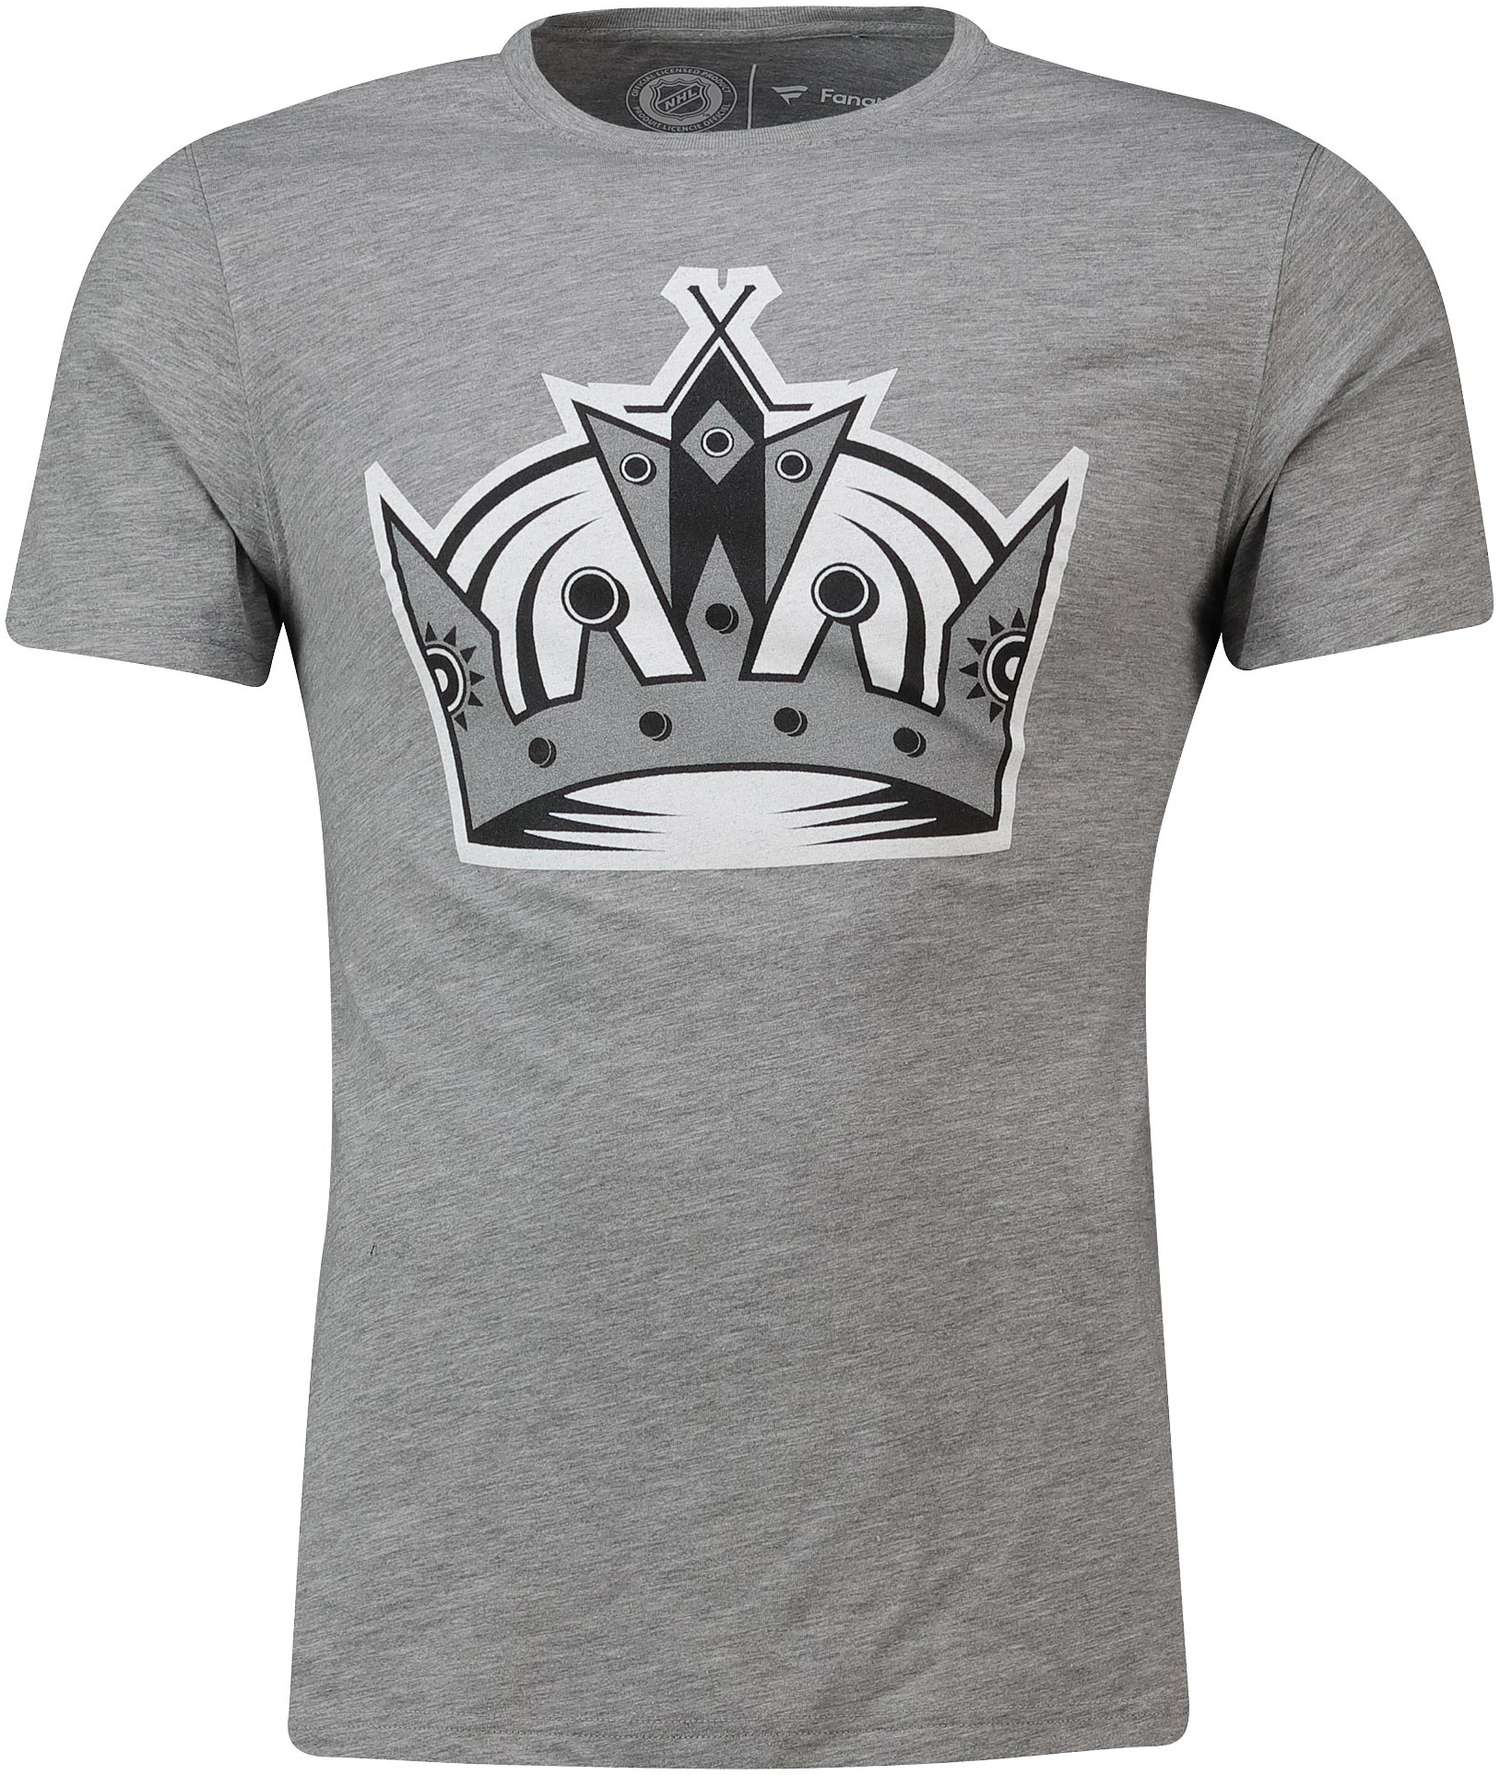 Fanatics - NHL Los Angeles Kings Secondary Core Graphic T-Shirt - Grau